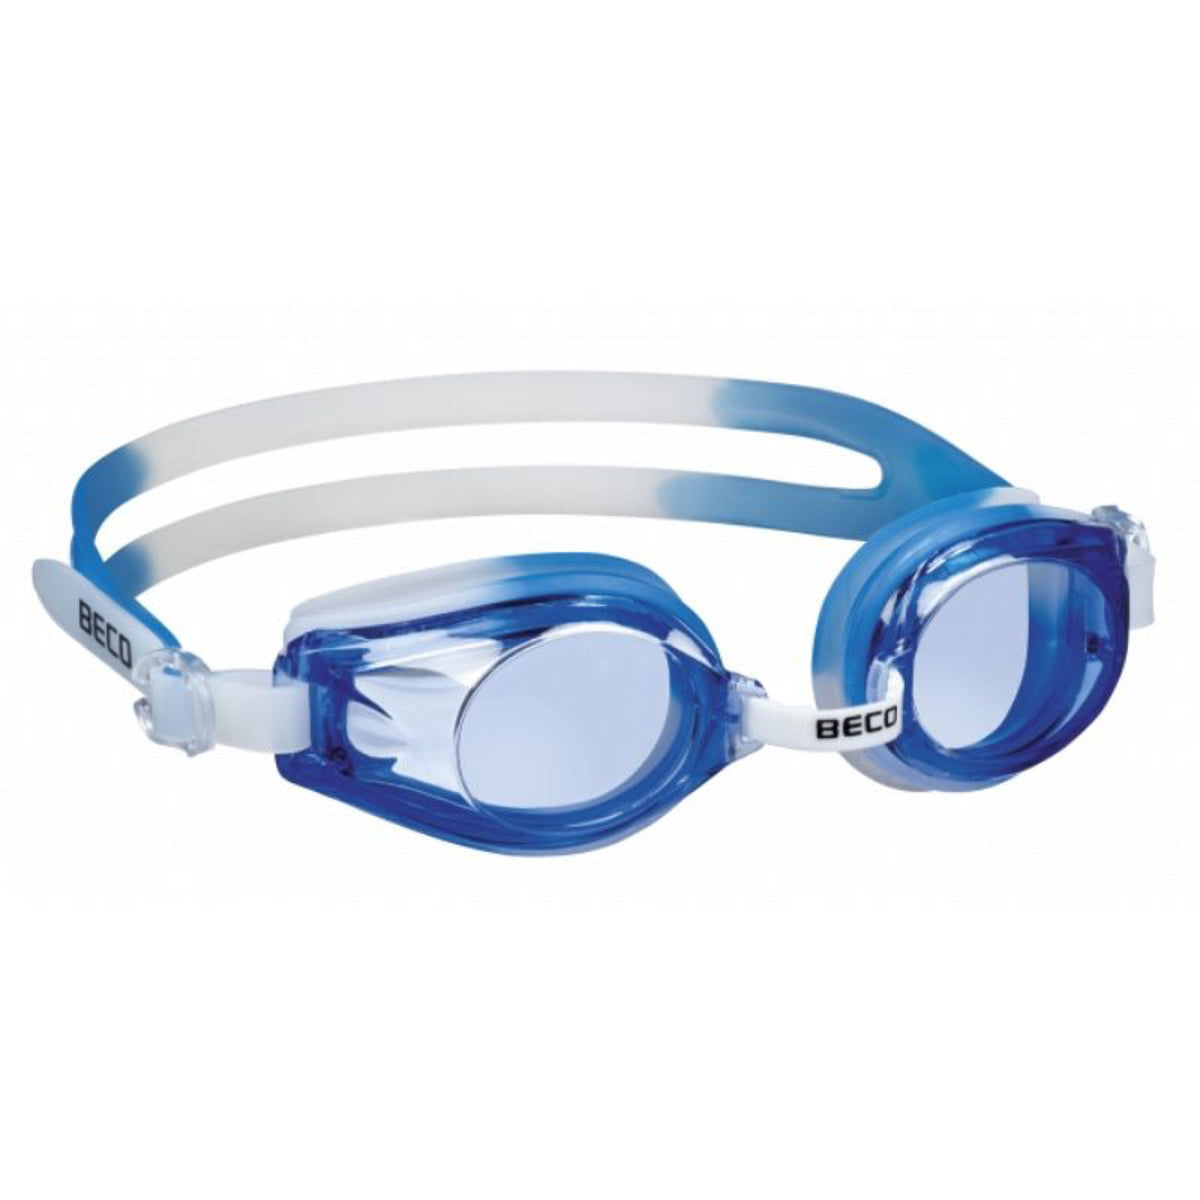 BECO "Rimini" Svømmebriller til børn +12 år - Hvid/Blå